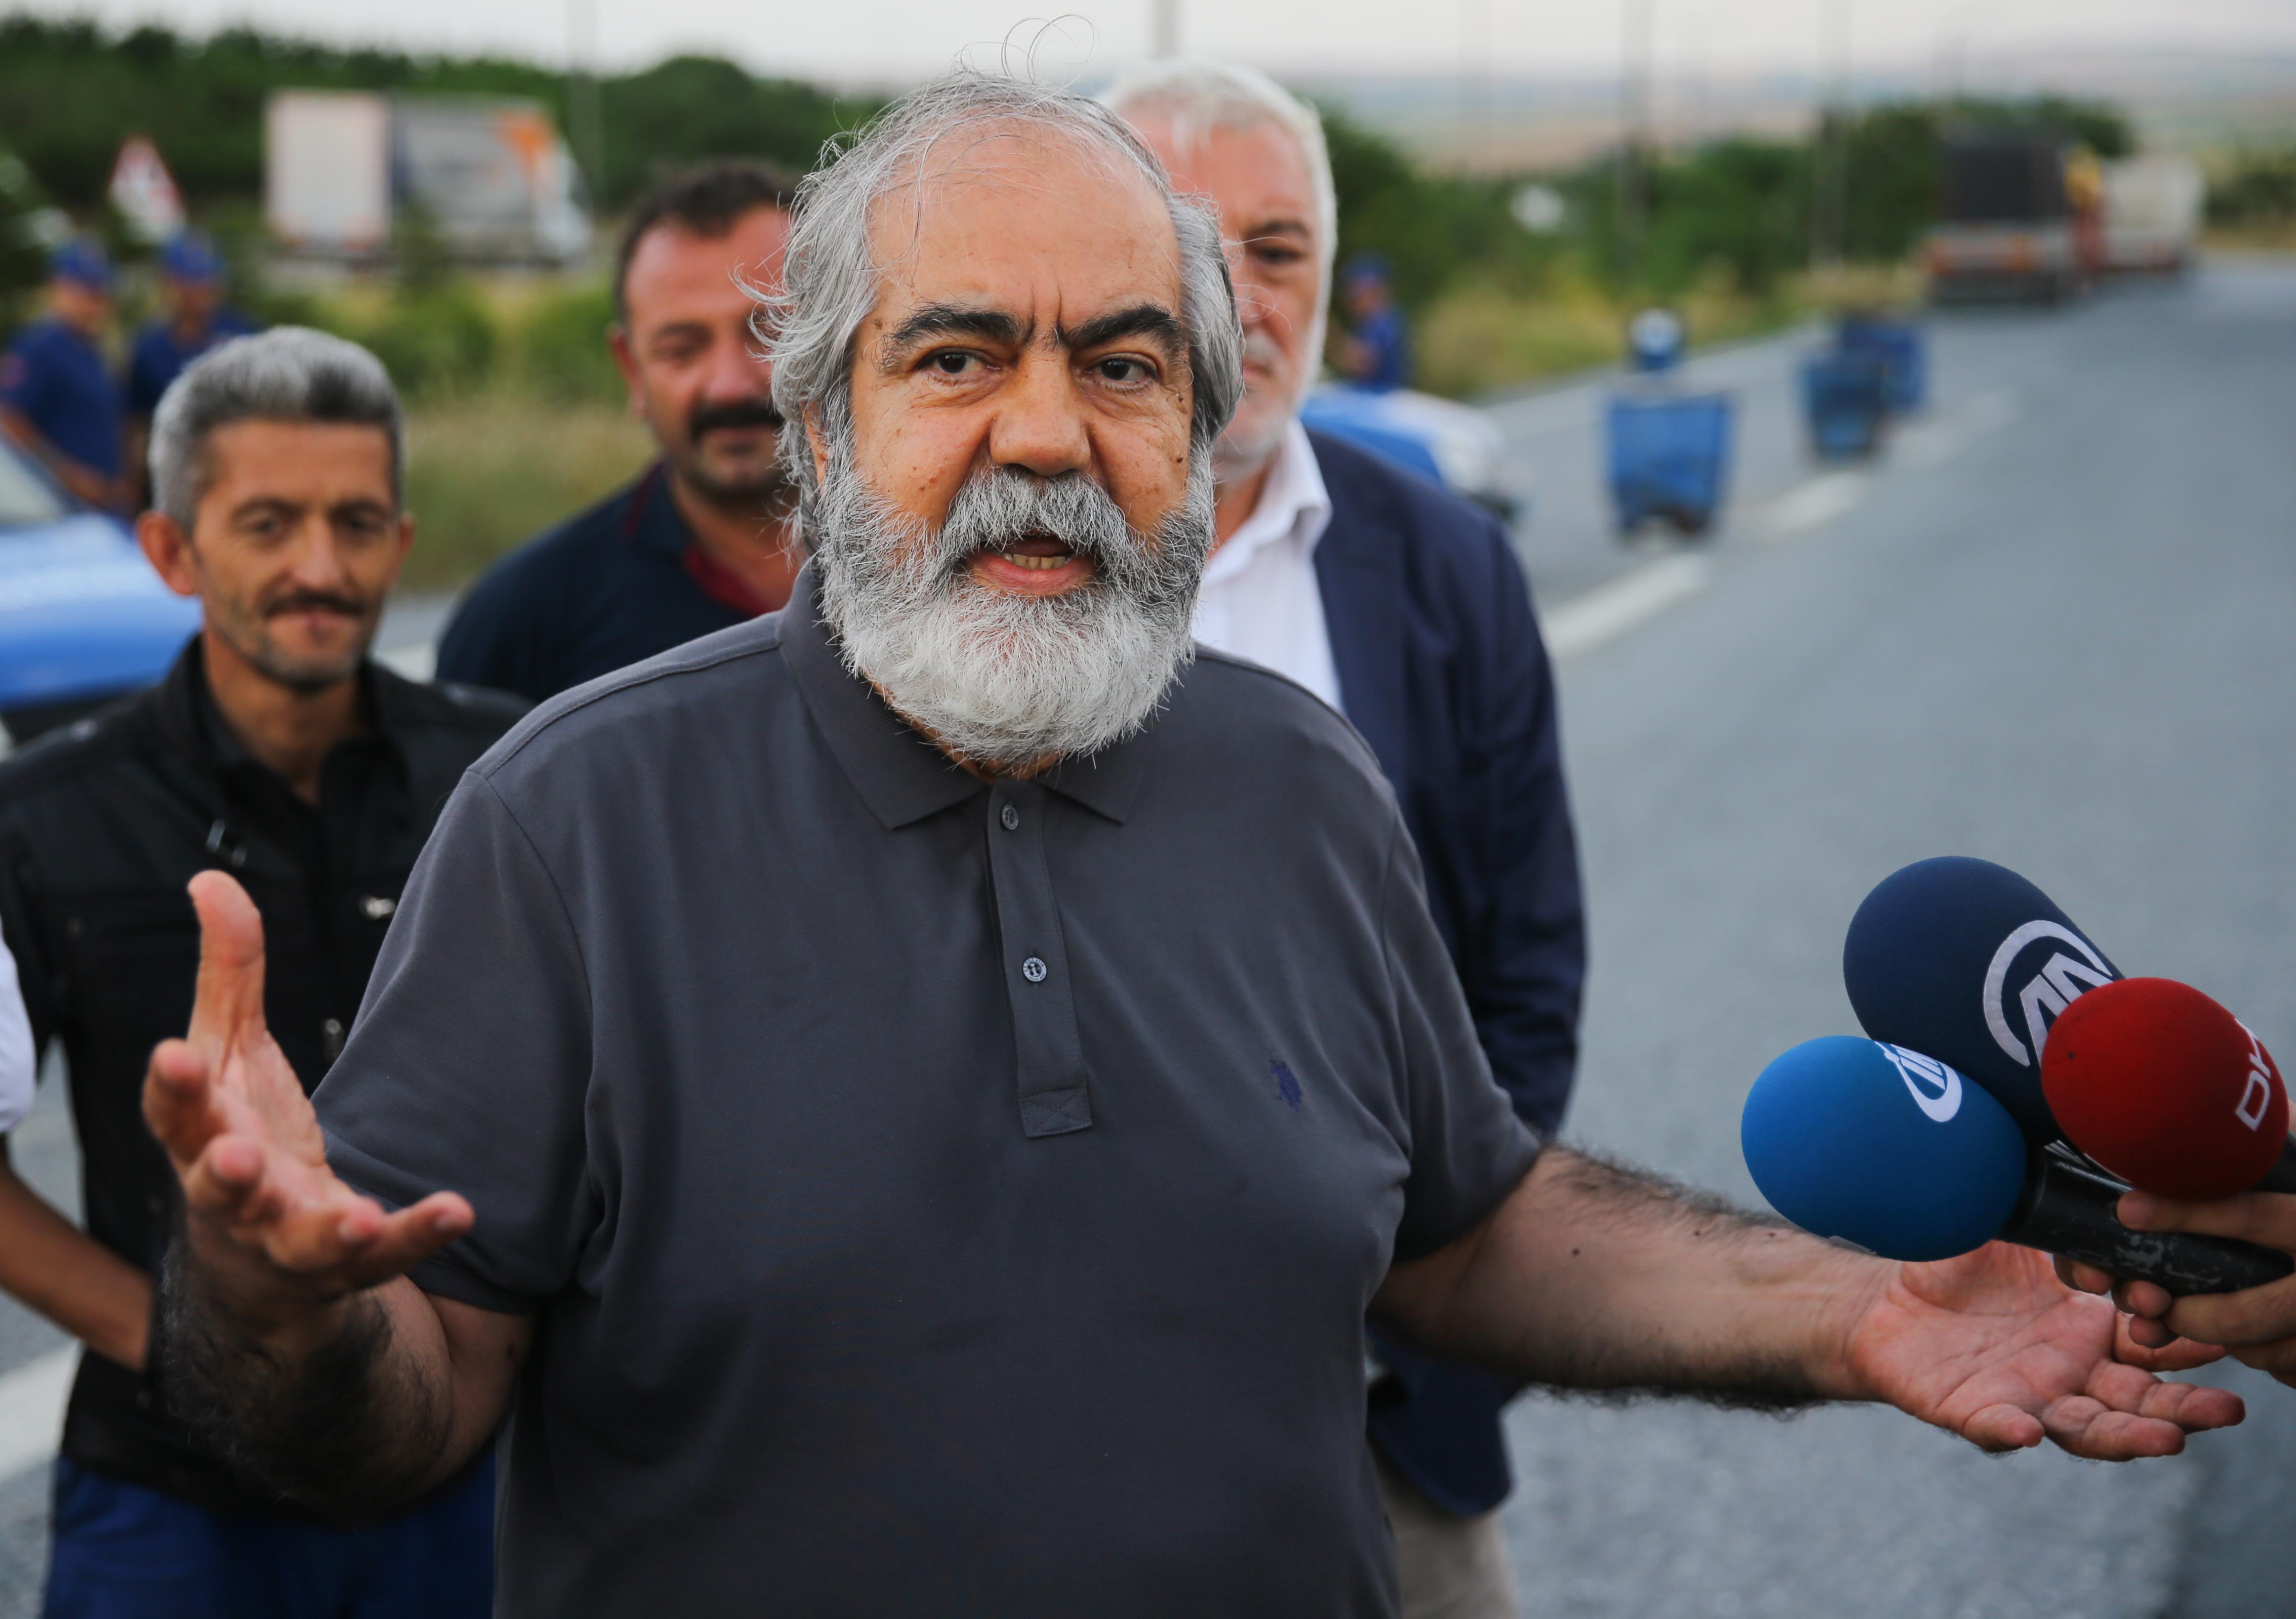 Gazeteci Mehmet Altan cezaevinden çıktı